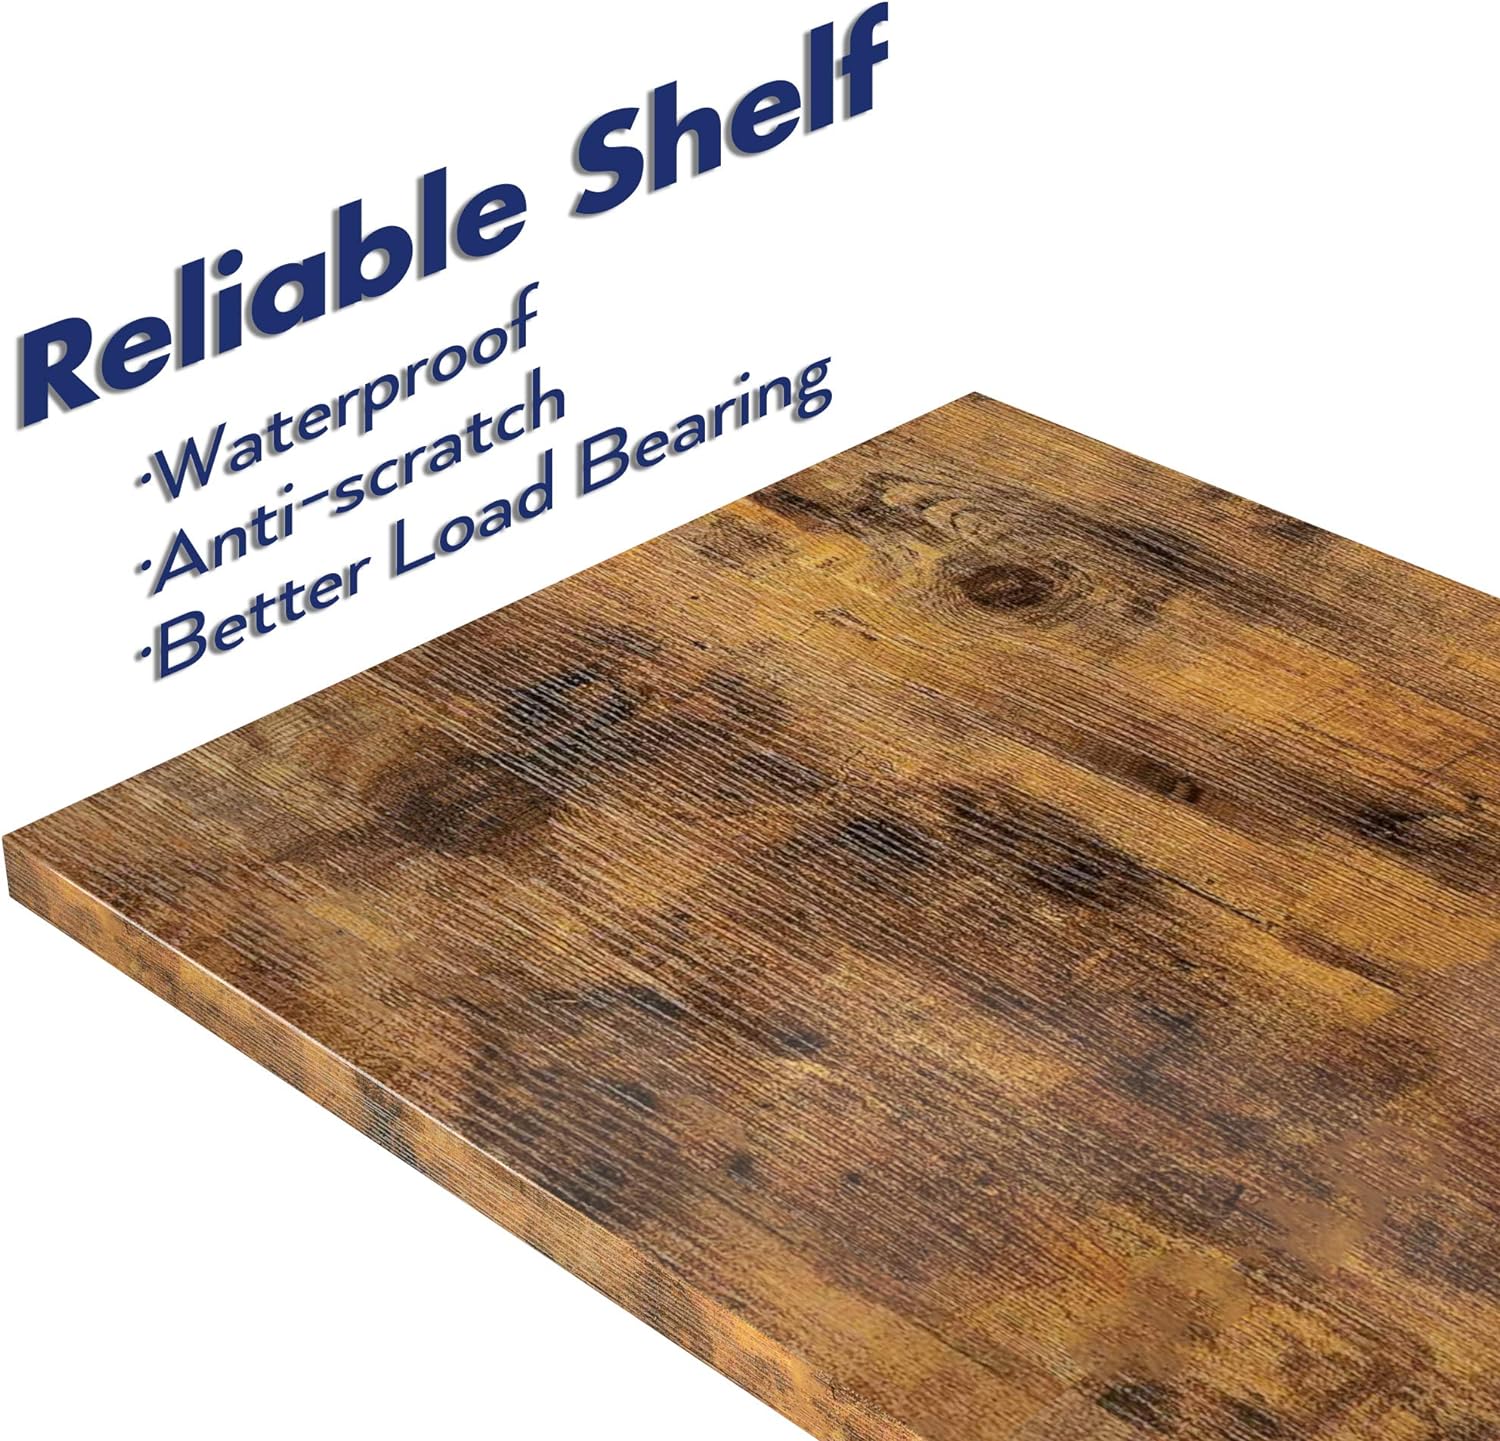 waterproof shelf